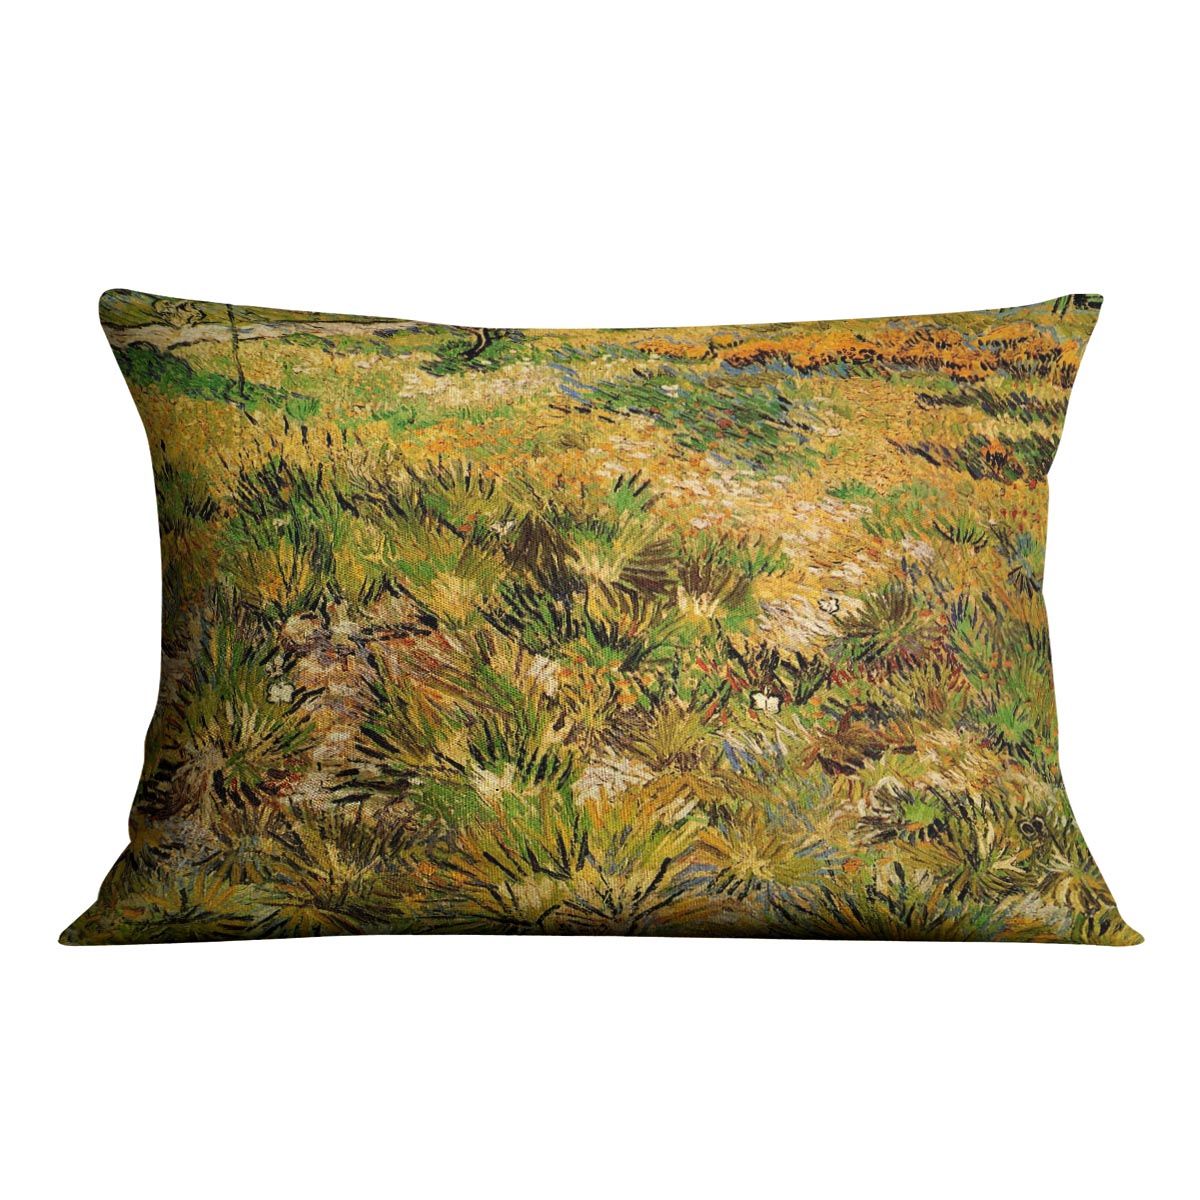 Meadow in the Garden of Saint-Paul Hospital by Van Gogh Cushion